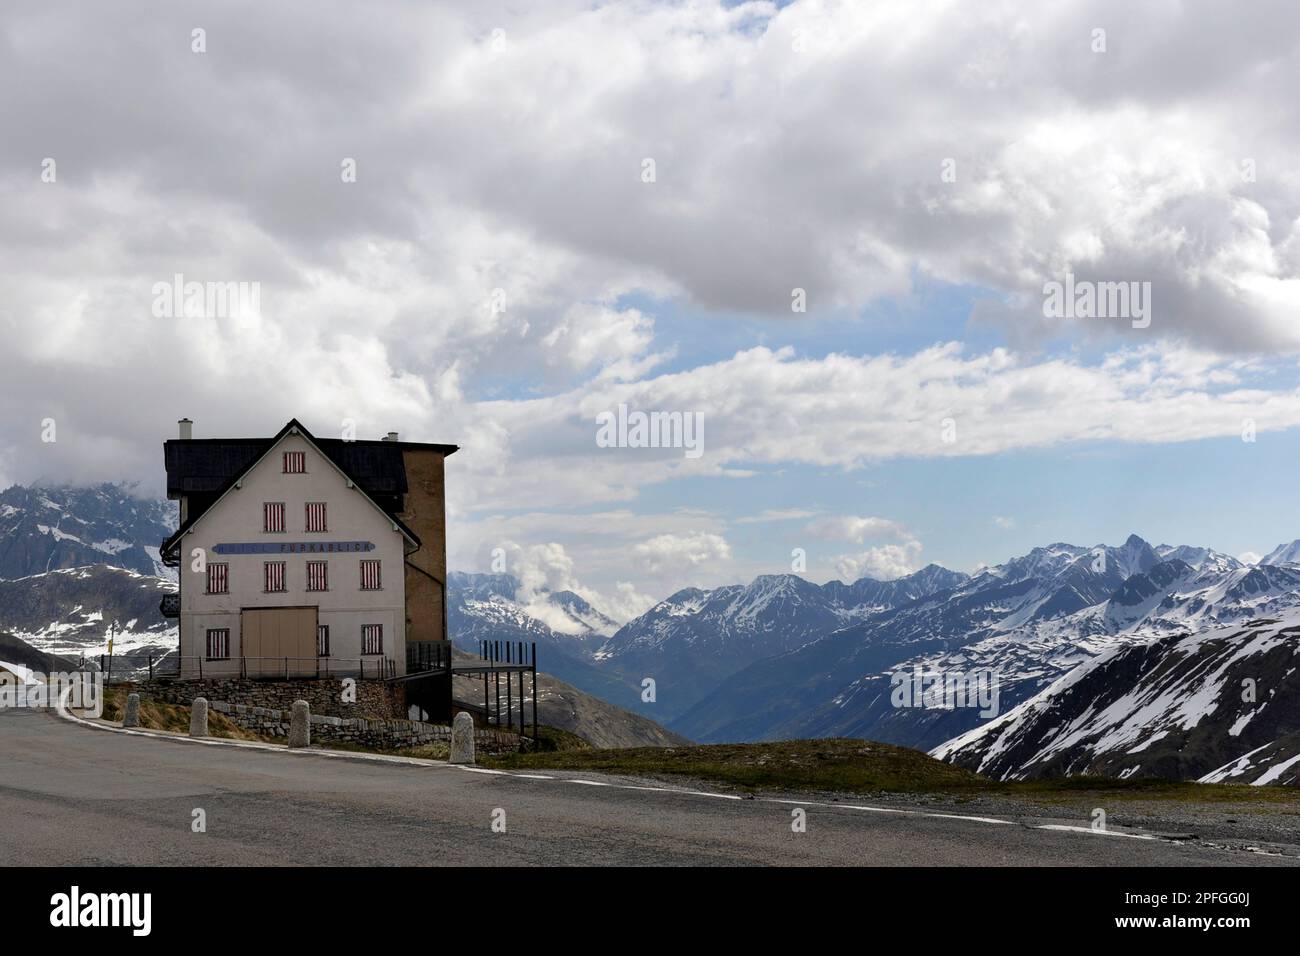 Furka pass, Switzerland Stock Photo